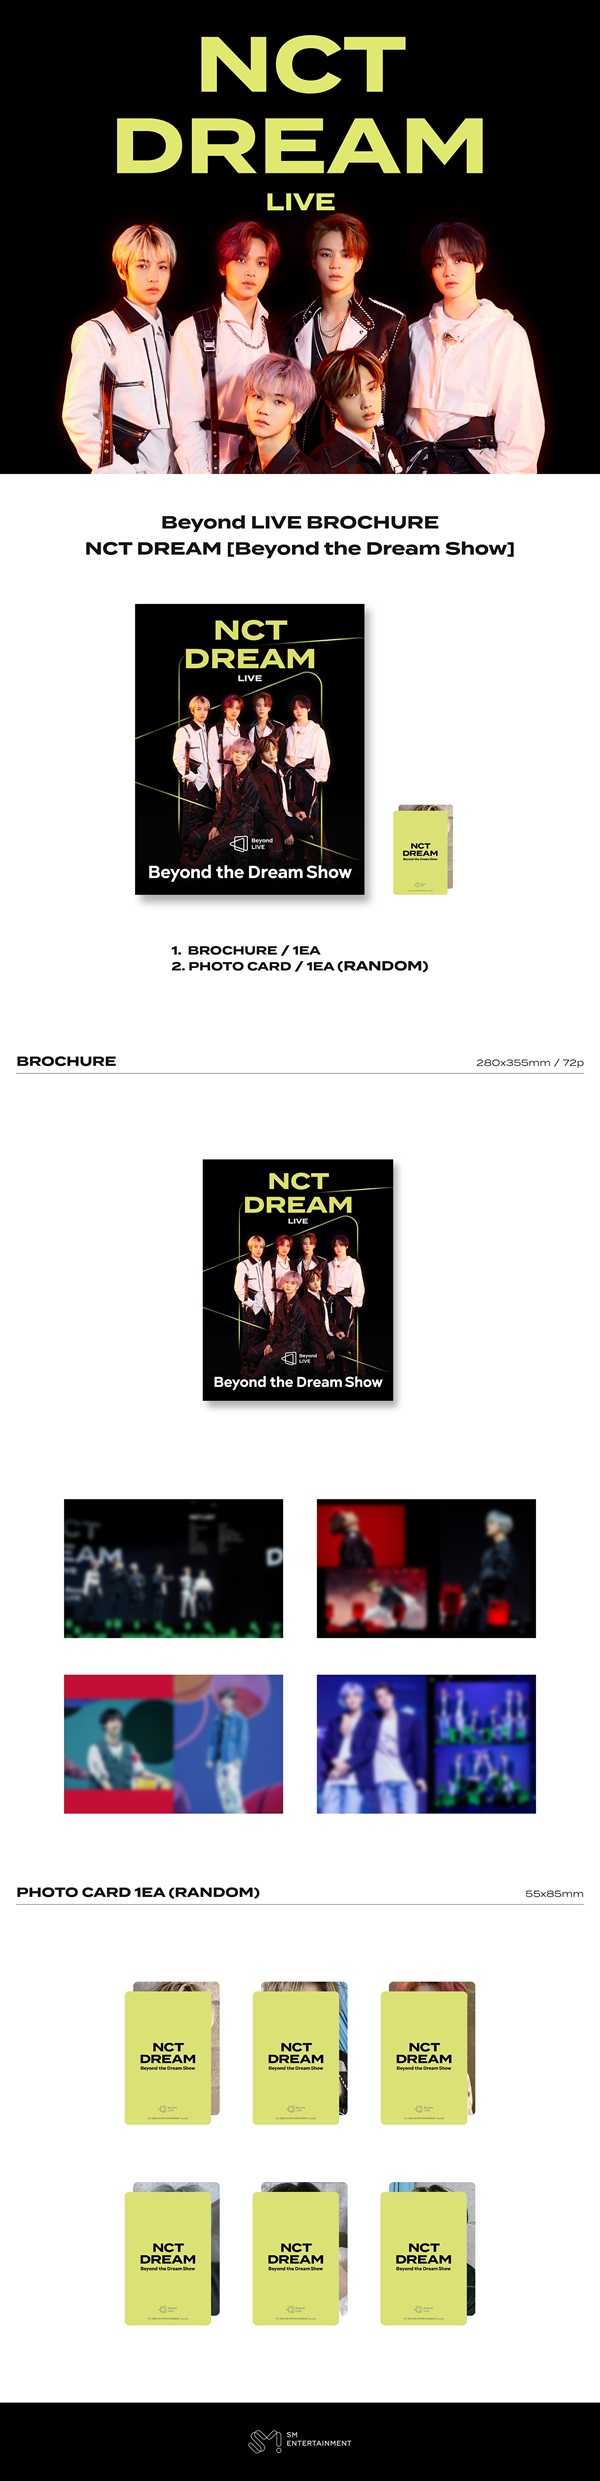 NCT beyond live brochure トレカ セット - zimazw.org